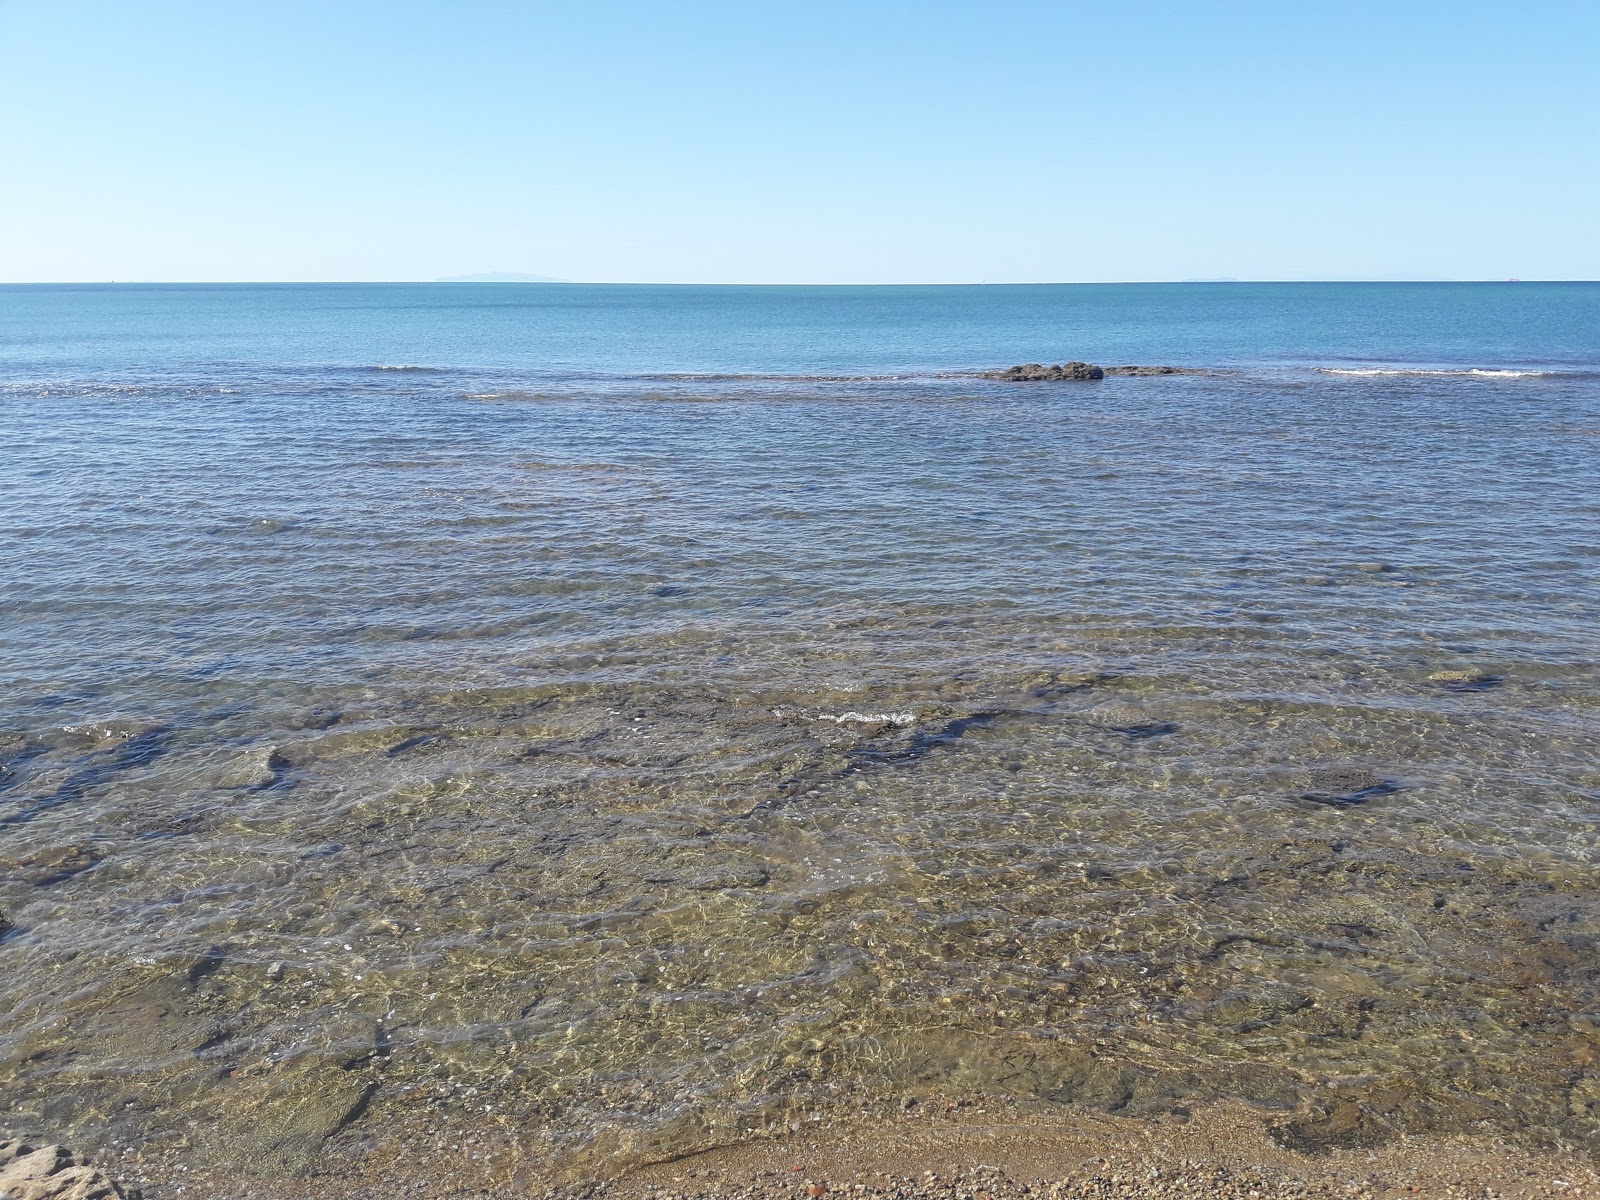 Foto af Spiaggia del sale med blåt vand overflade